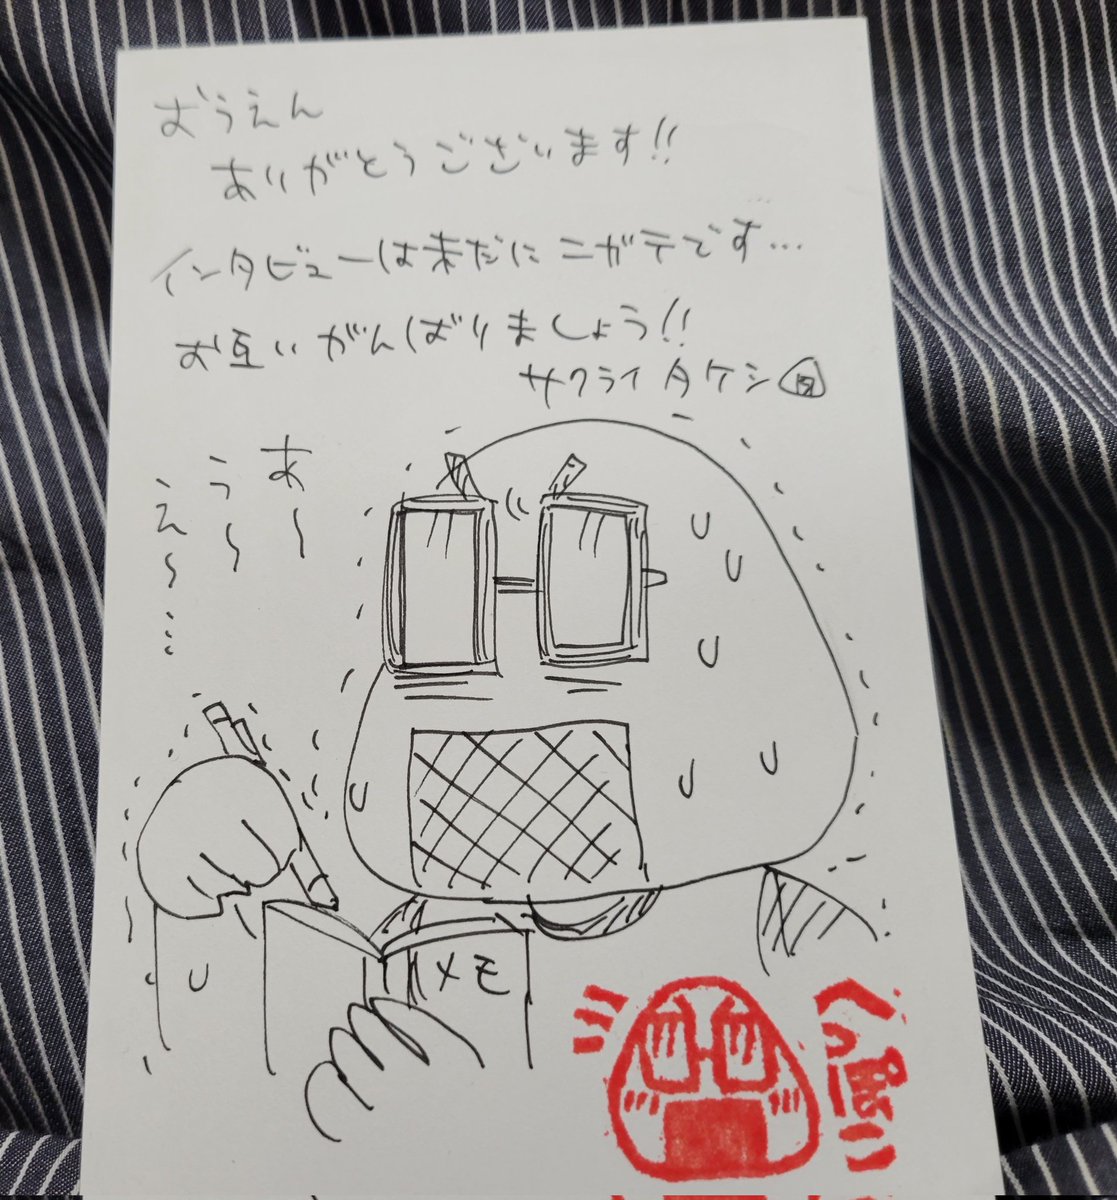 サクライタケシ先生(@ta_ke_sh_i )から年賀状のお返事が届きました🍙
いつもルポ漫画楽しく読んでます。いつかおにぎり繋がりで『呪術廻戦』の芥見先生にインタビューして欲しいですね✨